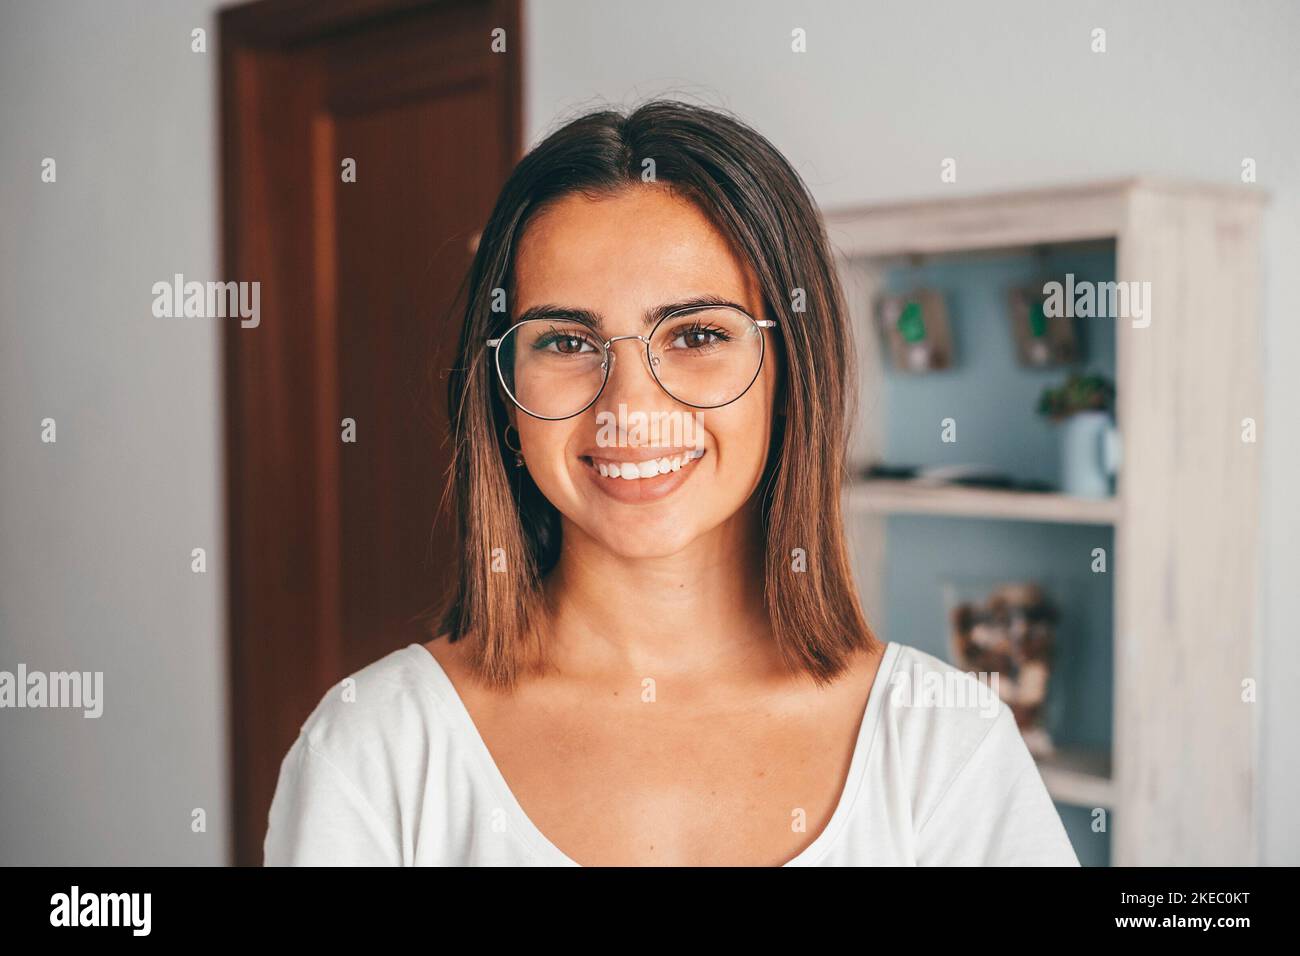 Bonne jeune femme en lunettes regardant l'appareil photo de la maison de sa maison. Belle dame satisfaite avec des cheveux rabots souriant en faisant face à l'appareil photo dans un appartement moderne. Jeunes femmes souriant à la maison Banque D'Images